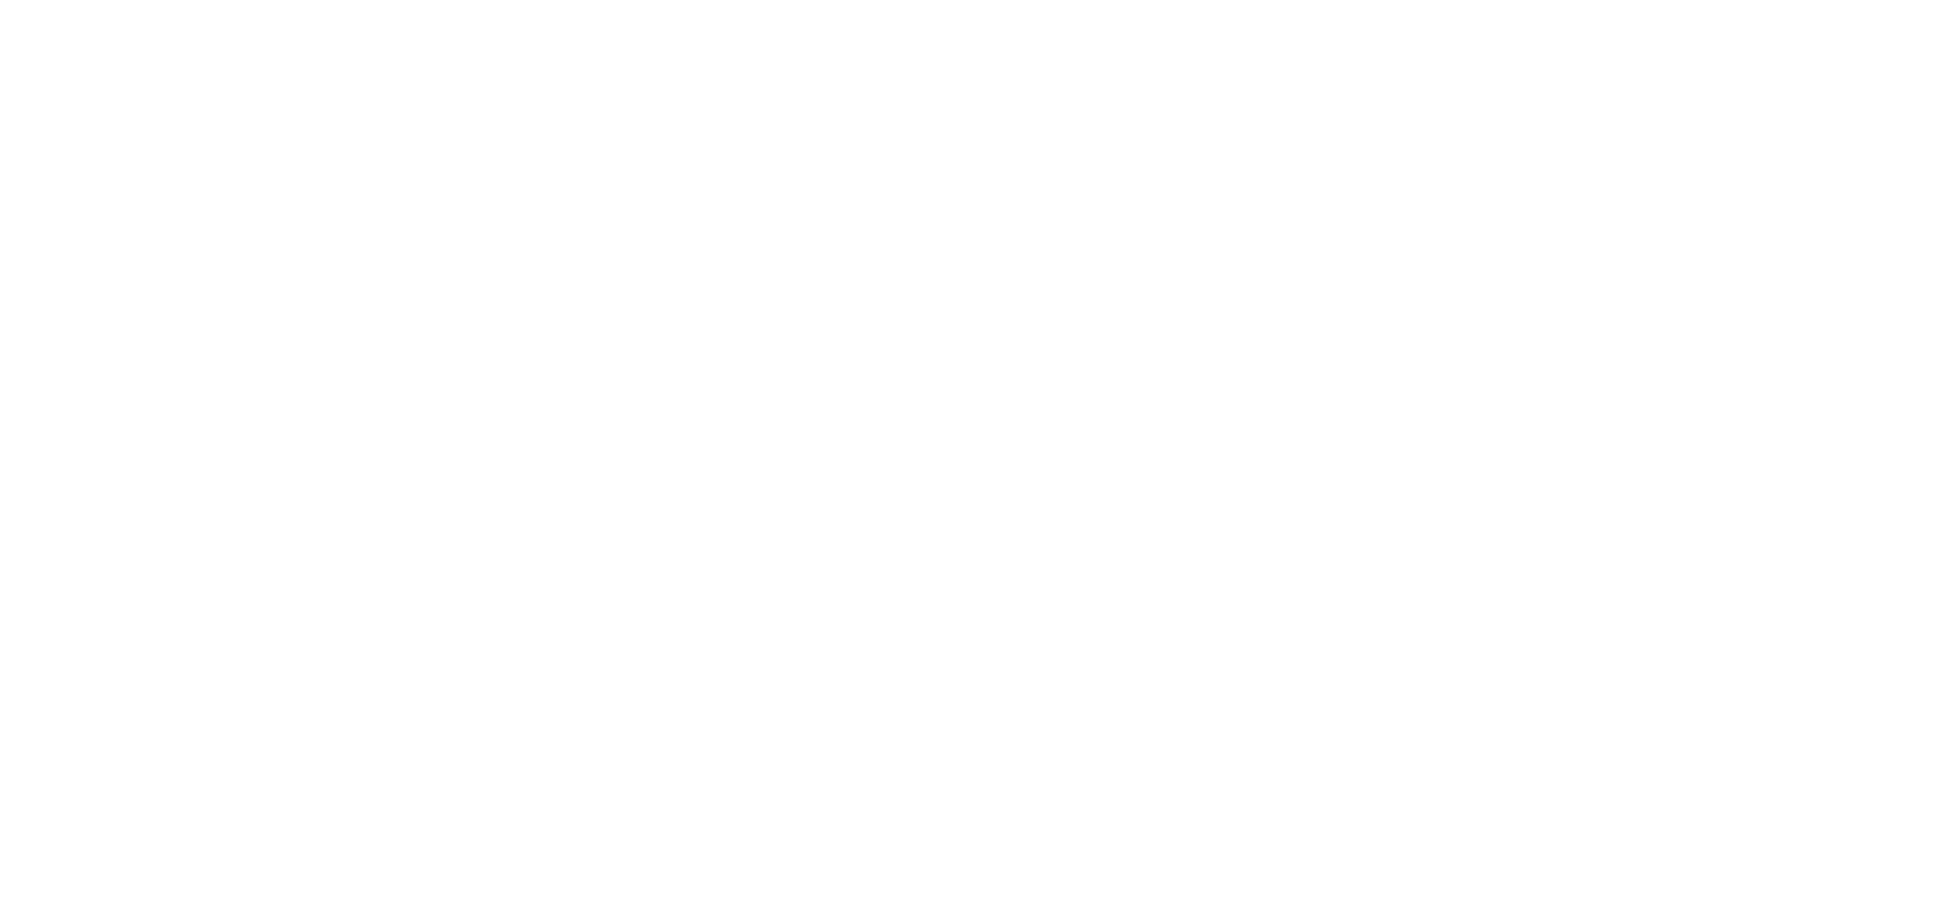 Puregym logo